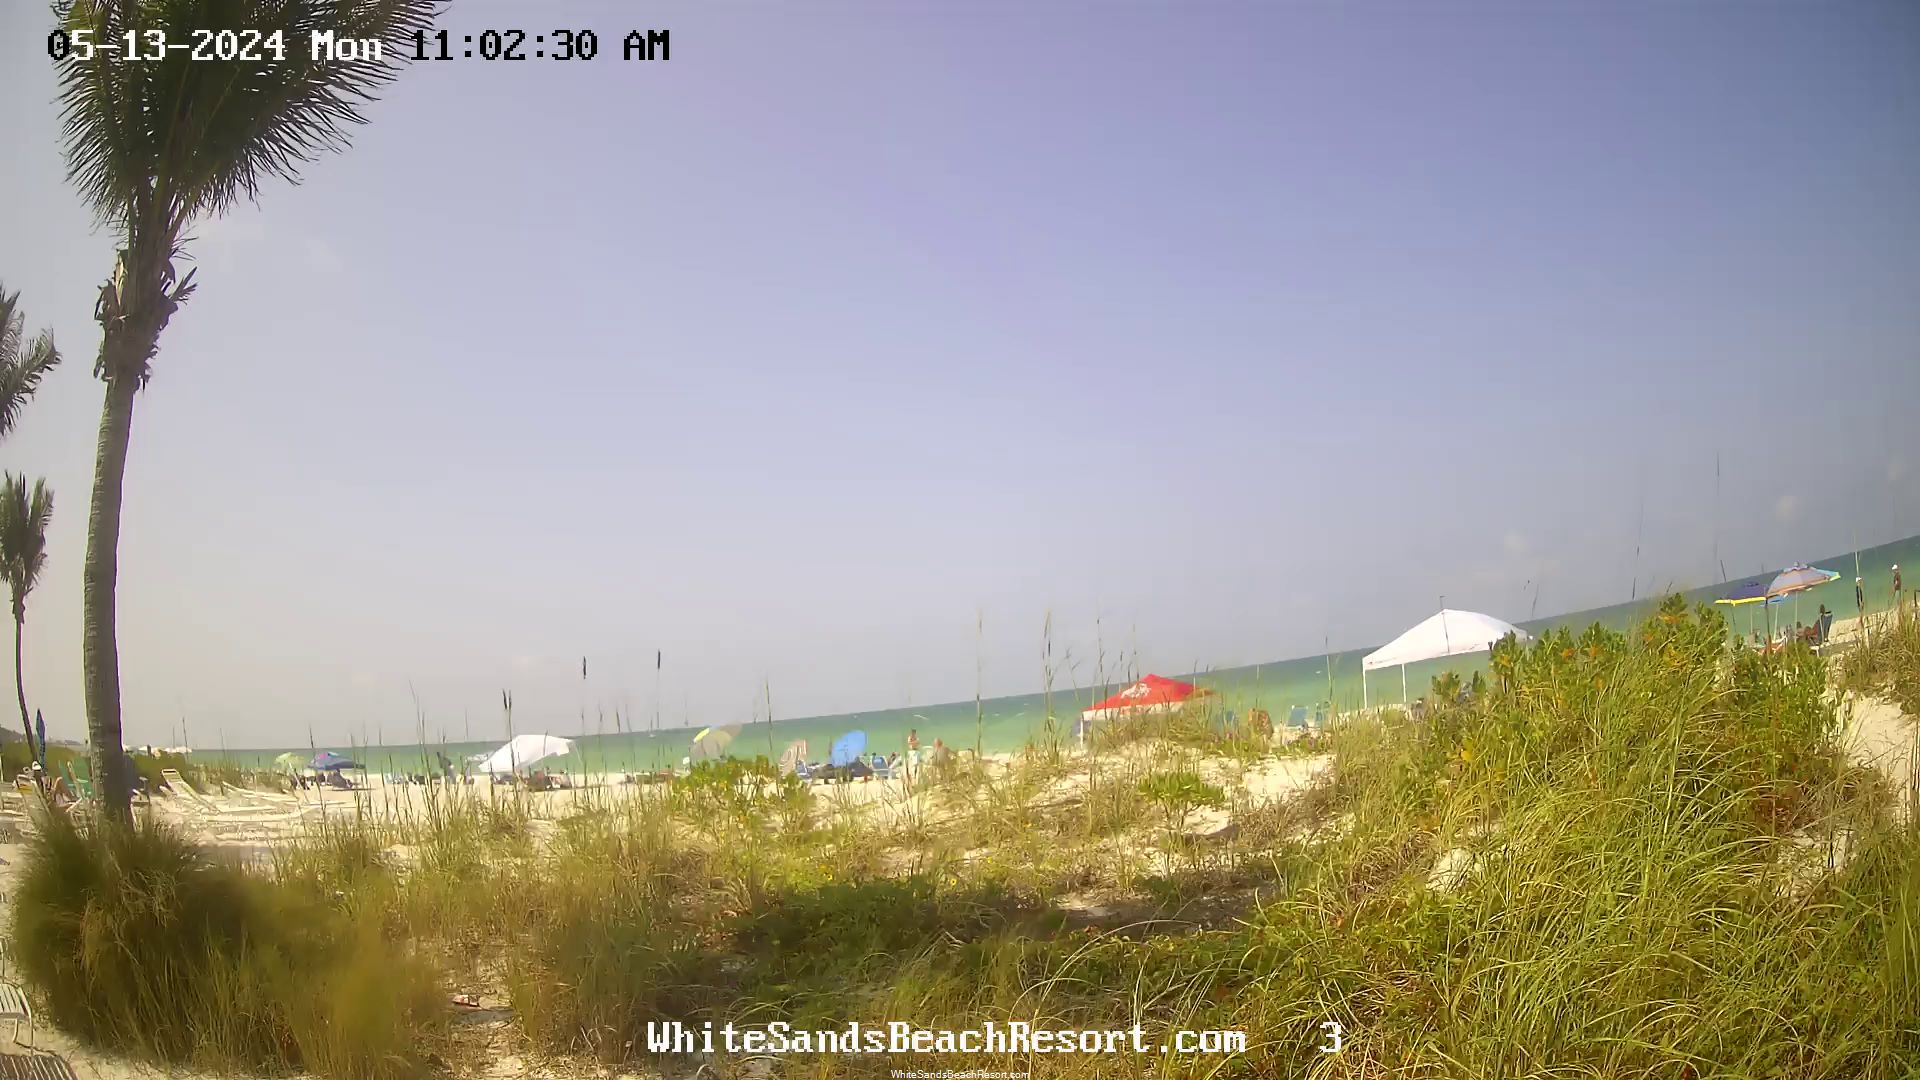 Holmes Beach, Florida Mo. 10:56